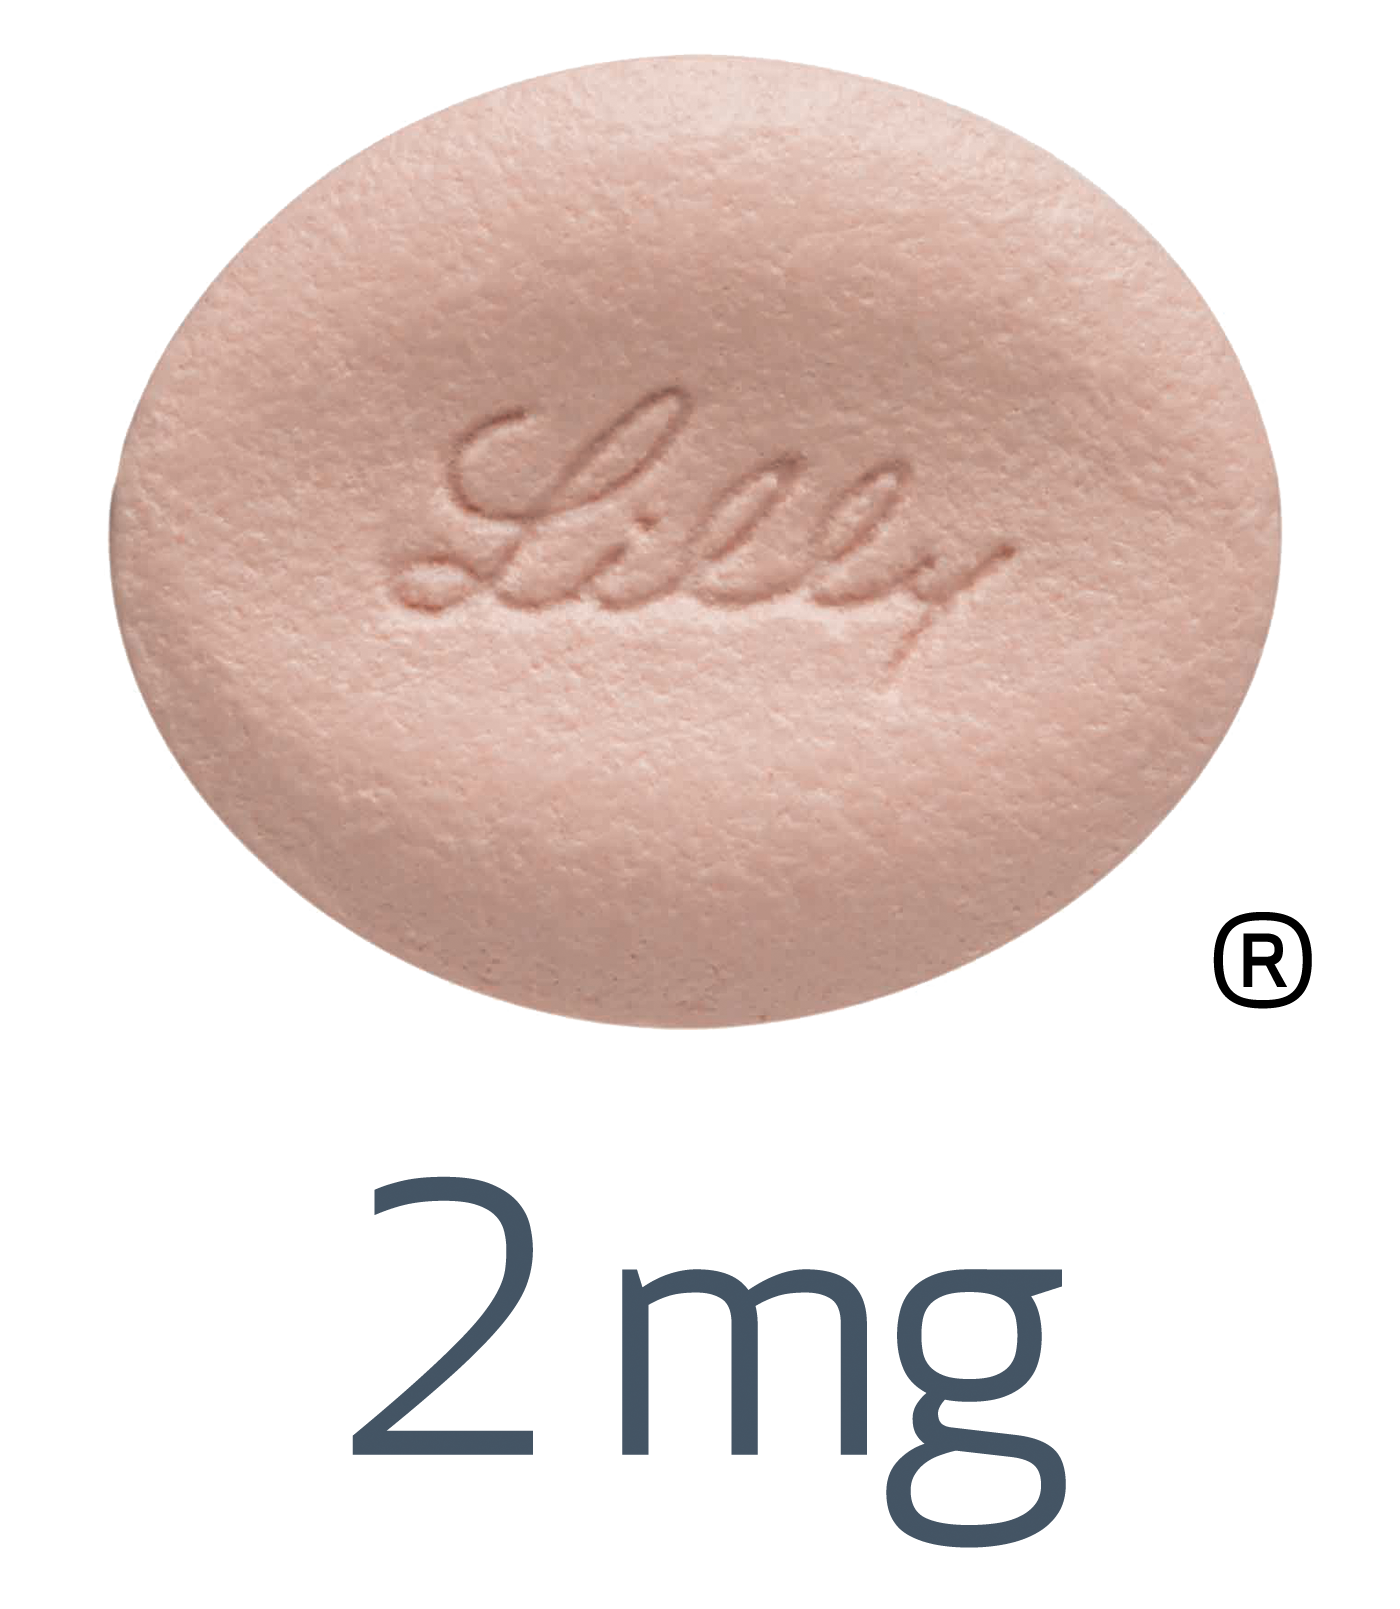 Olumiant 2mg pill